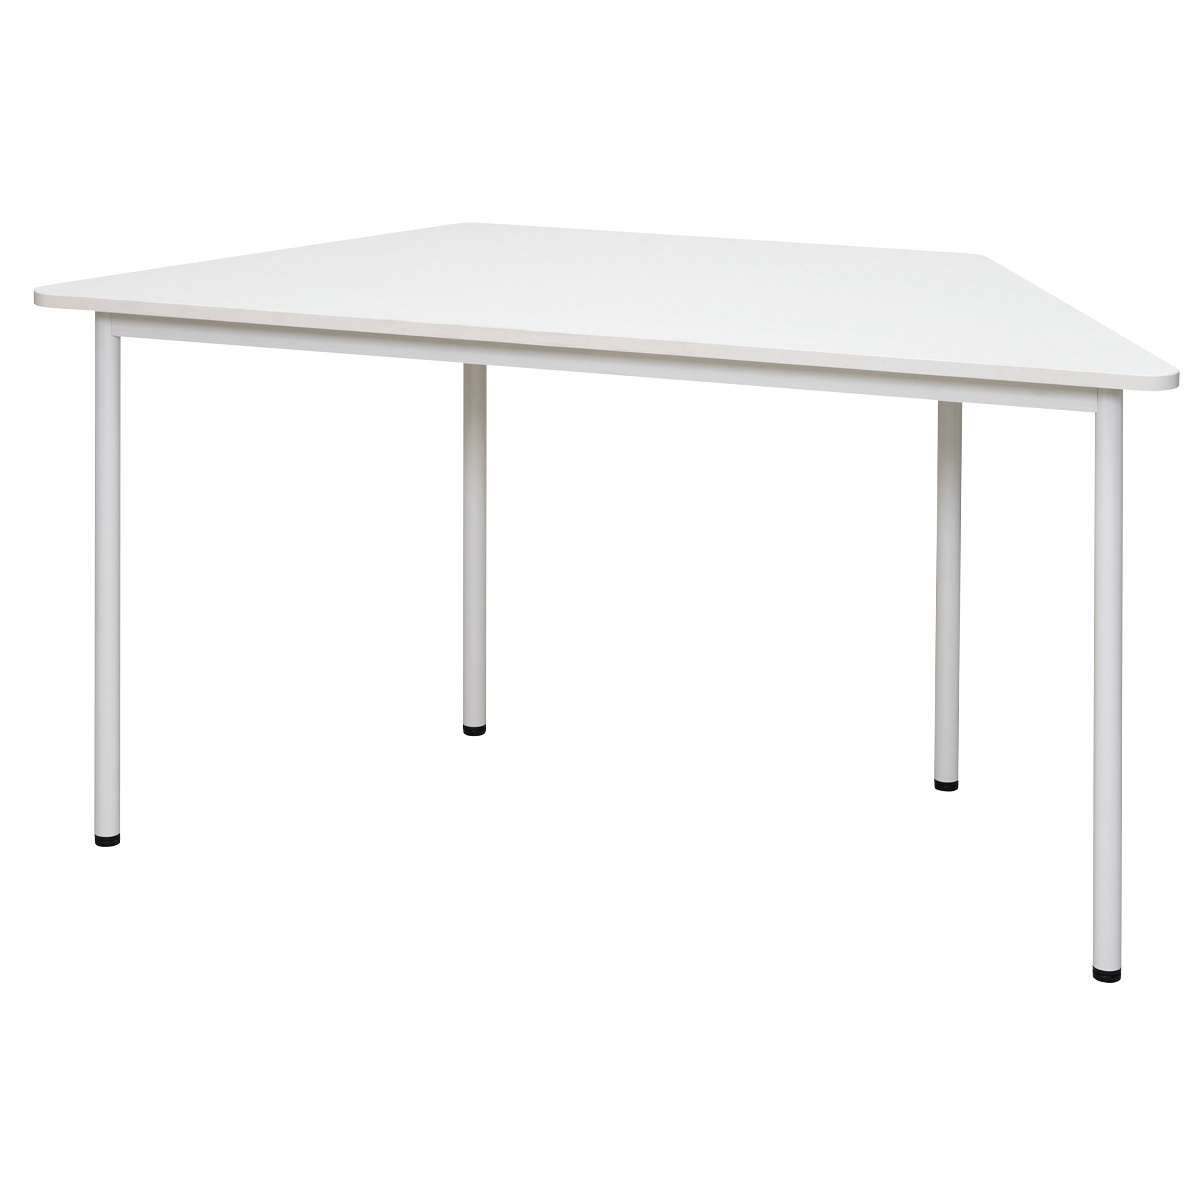 ラディーシリーズ RFシンプルテーブル W1400 台形 [ホワイト ナチュラル ダーク] RFSPT-1470D ワークテーブル ミーティングテーブル 会議テーブル